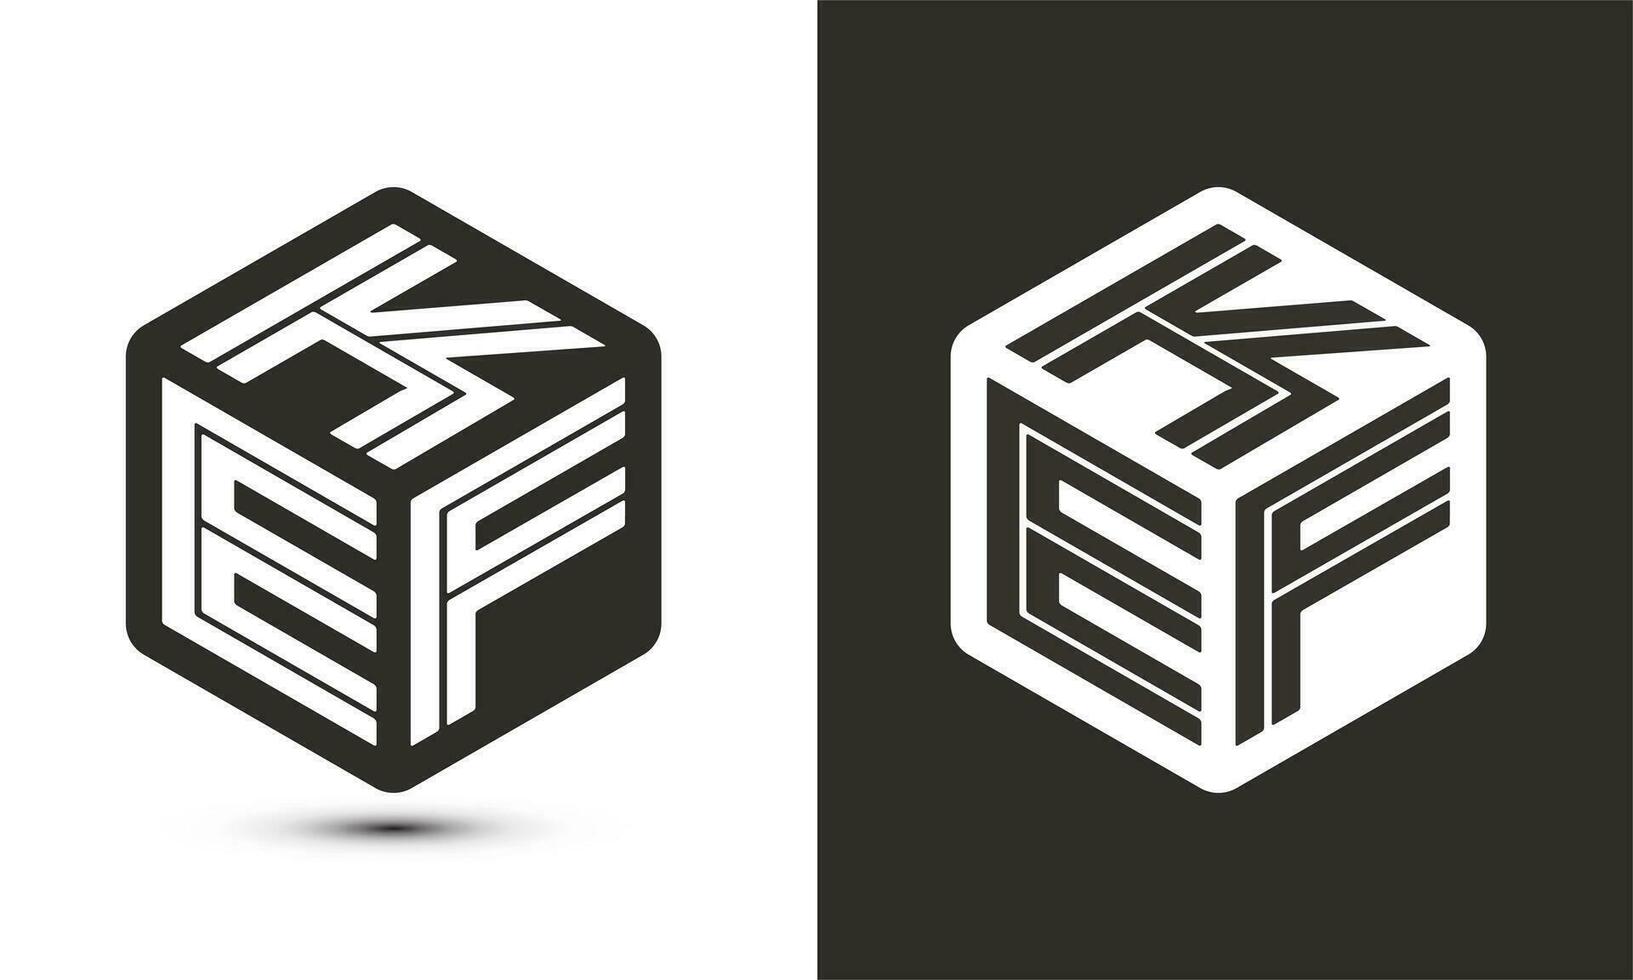 kef brief logo ontwerp met illustrator kubus logo, vector logo modern alfabet doopvont overlappen stijl.